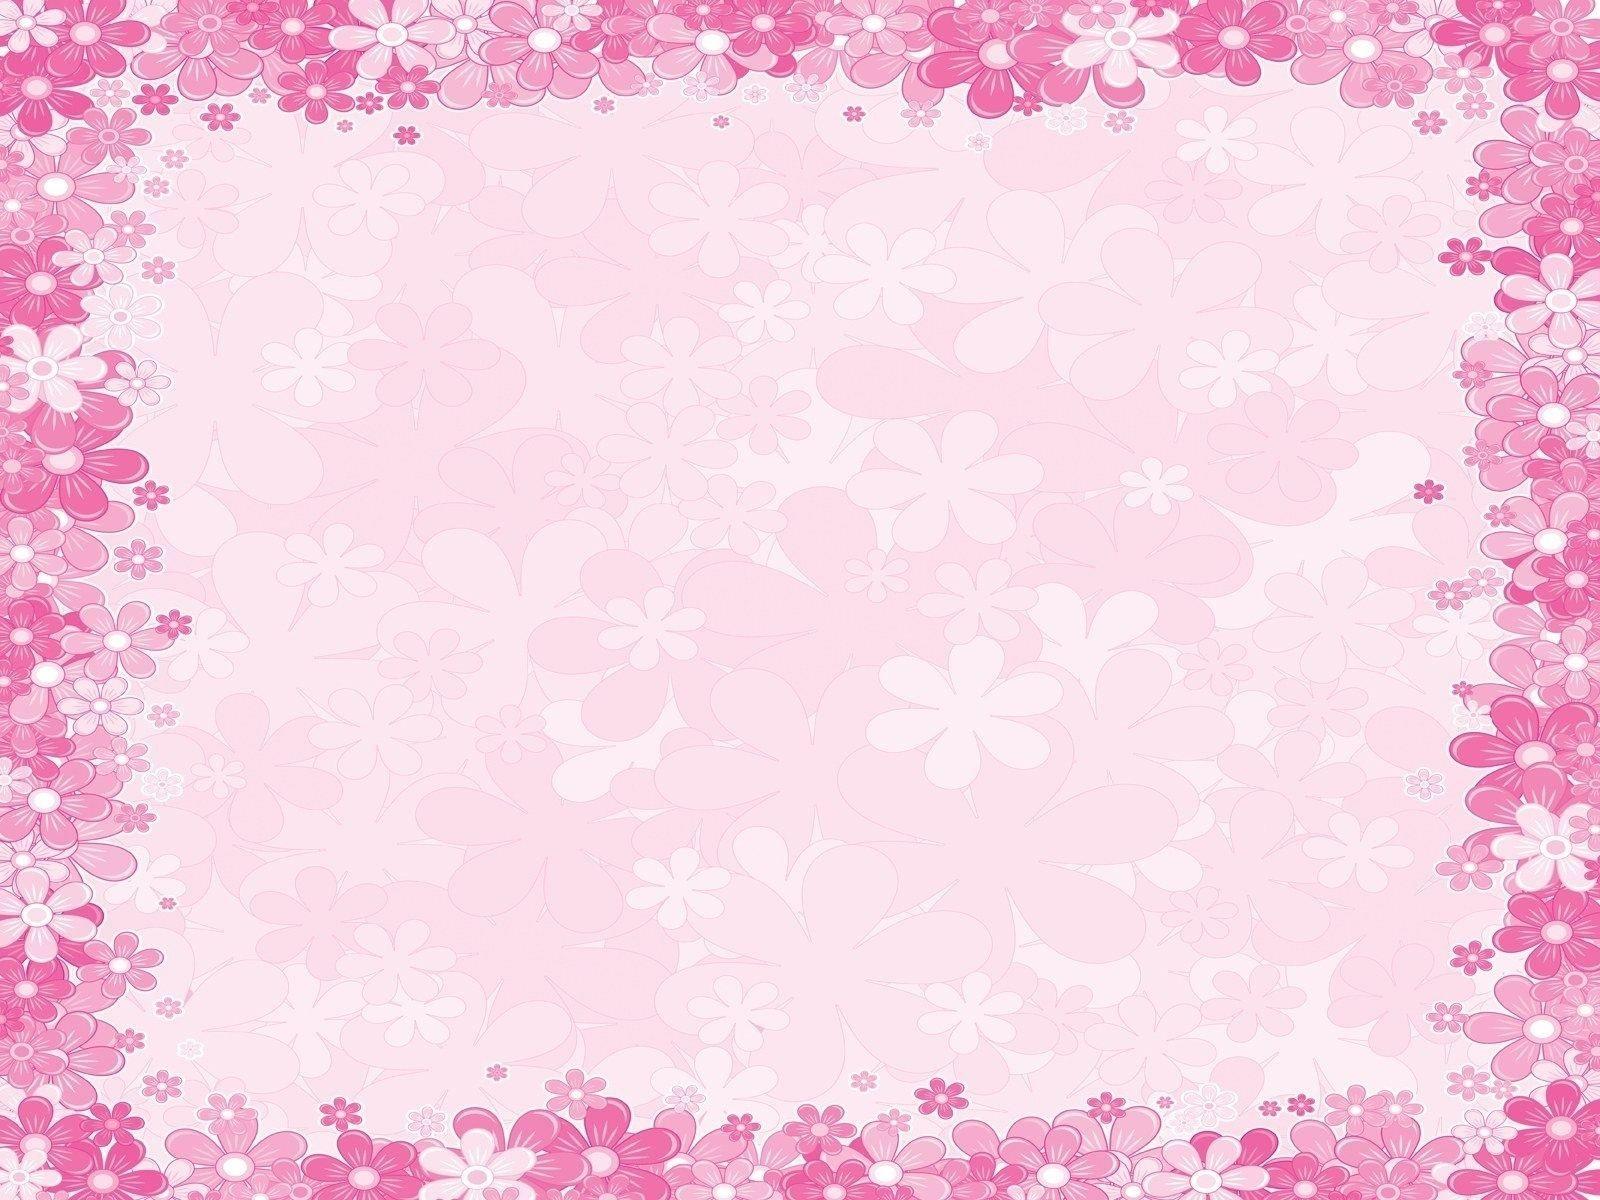 presentation background images pink